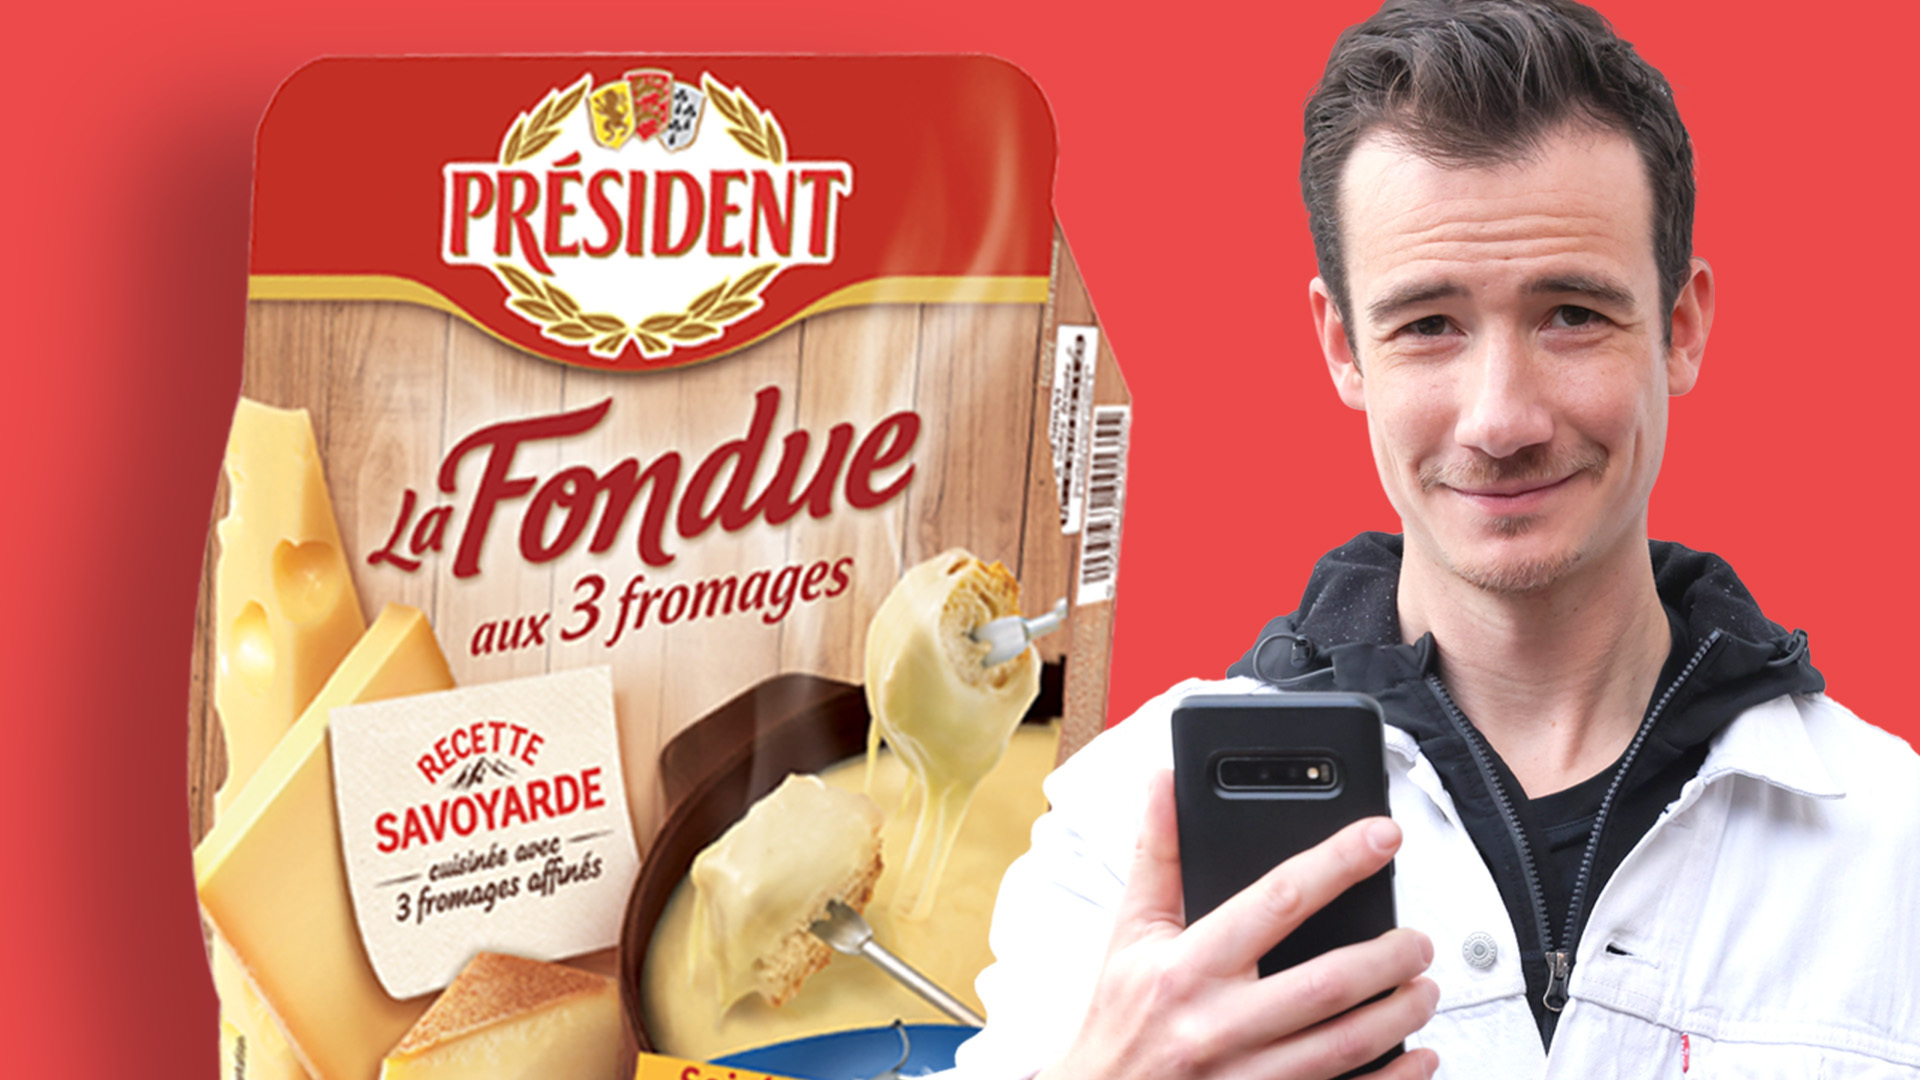 Consommée à très haute dose, la fondue 3 fromages Président présente des risques pour la santé. Le Parisien